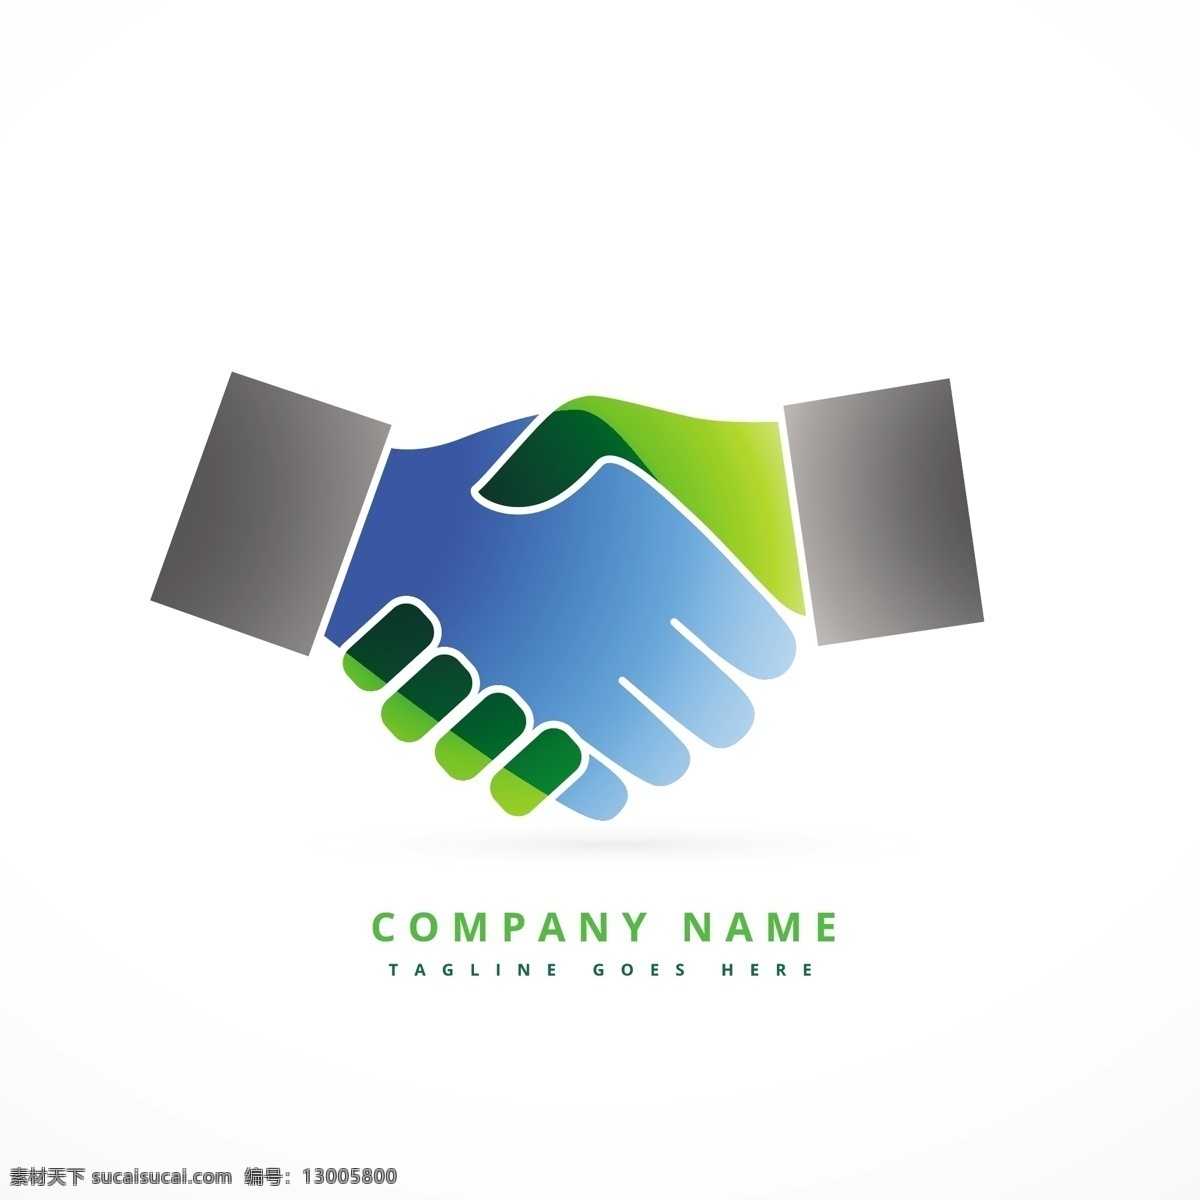 彩色 握手 标志 logo 模板 扁平化 企业商标 logo模板